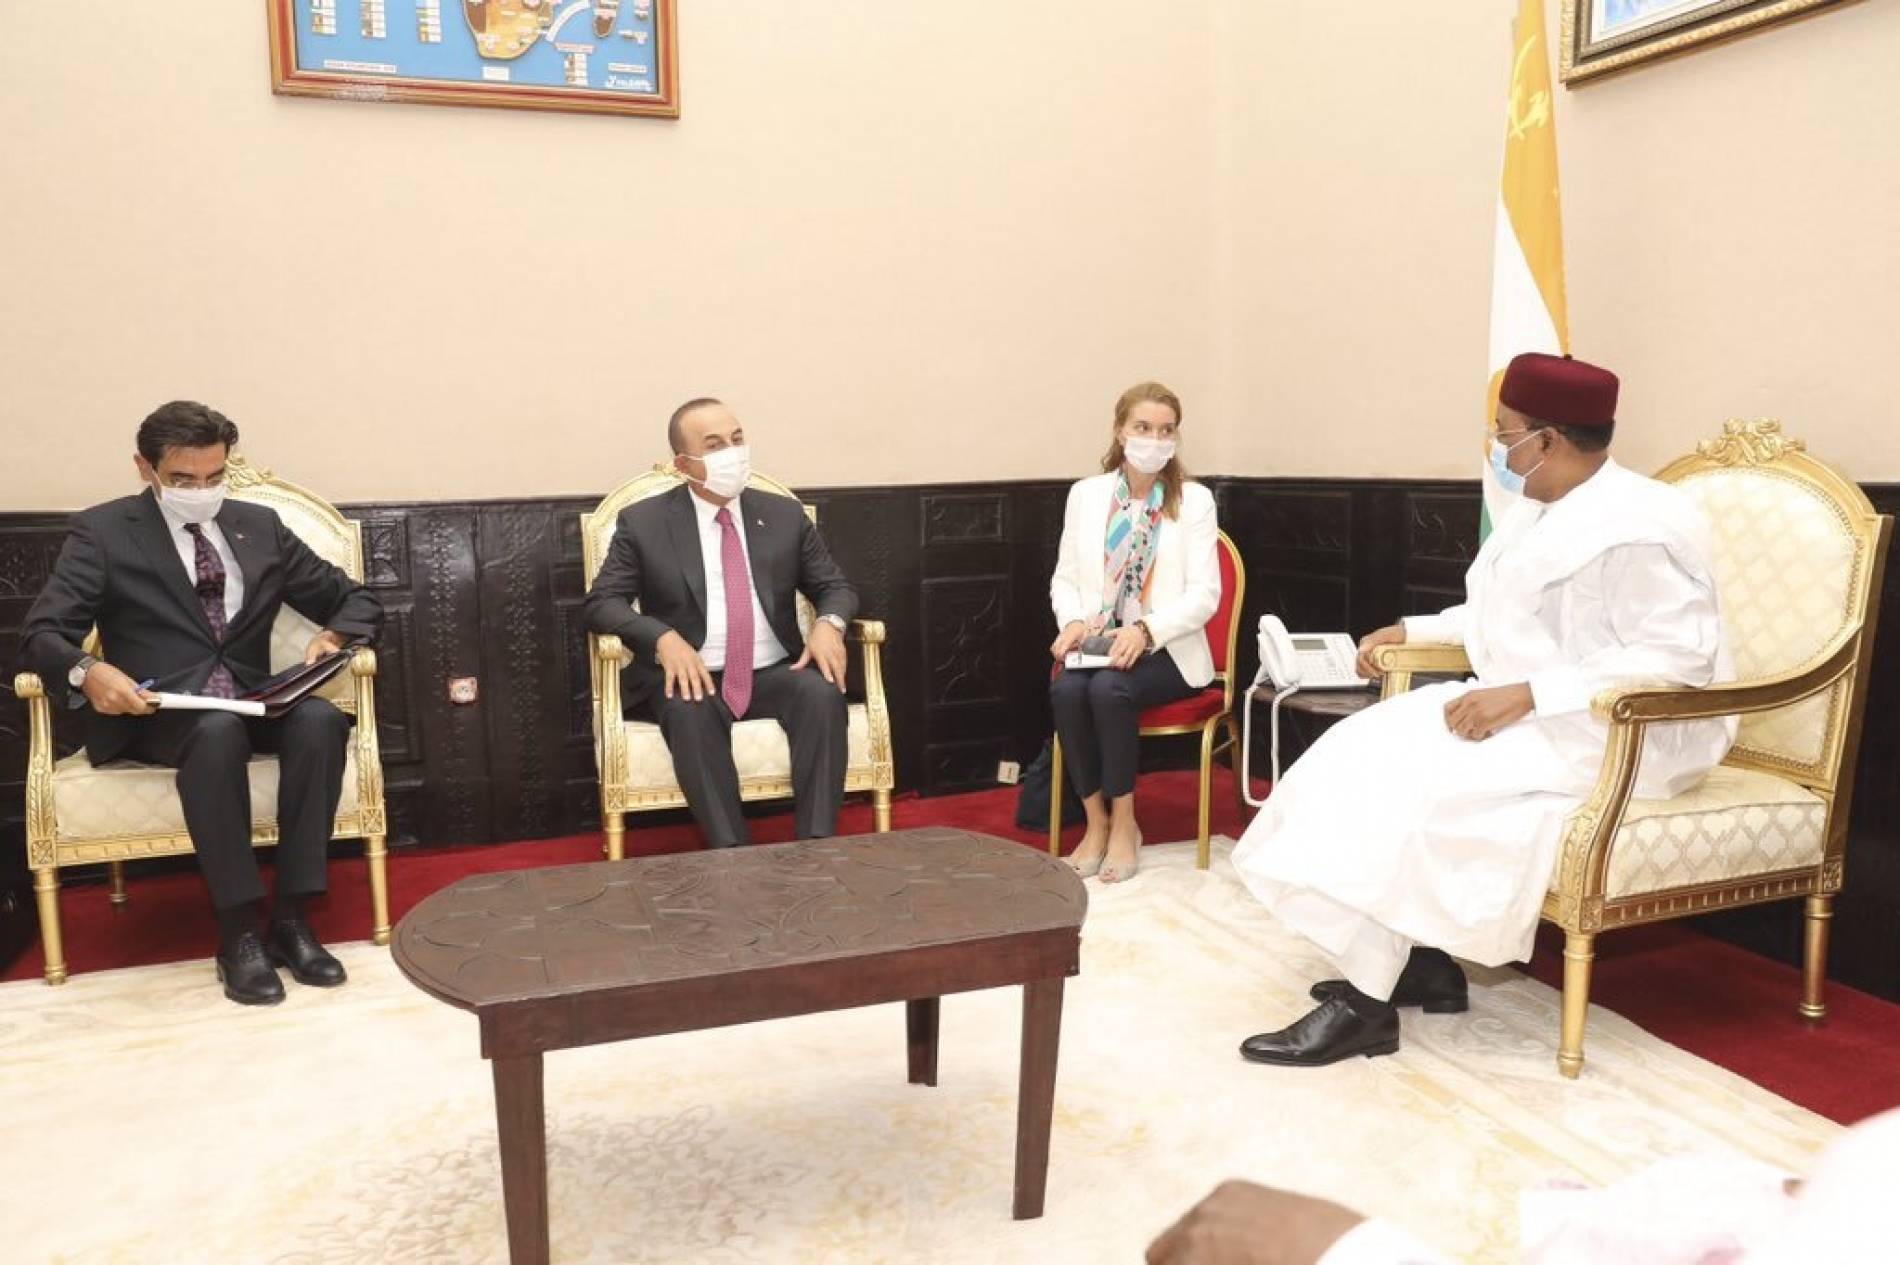 Le Président de la République reçoit une délégation turque : «J’ai transmis les salutations du Président Erdoğan ainsi que ses vœux de venir ici à Niamey», a déclaré M. Mevlüt Çavuşoğlu